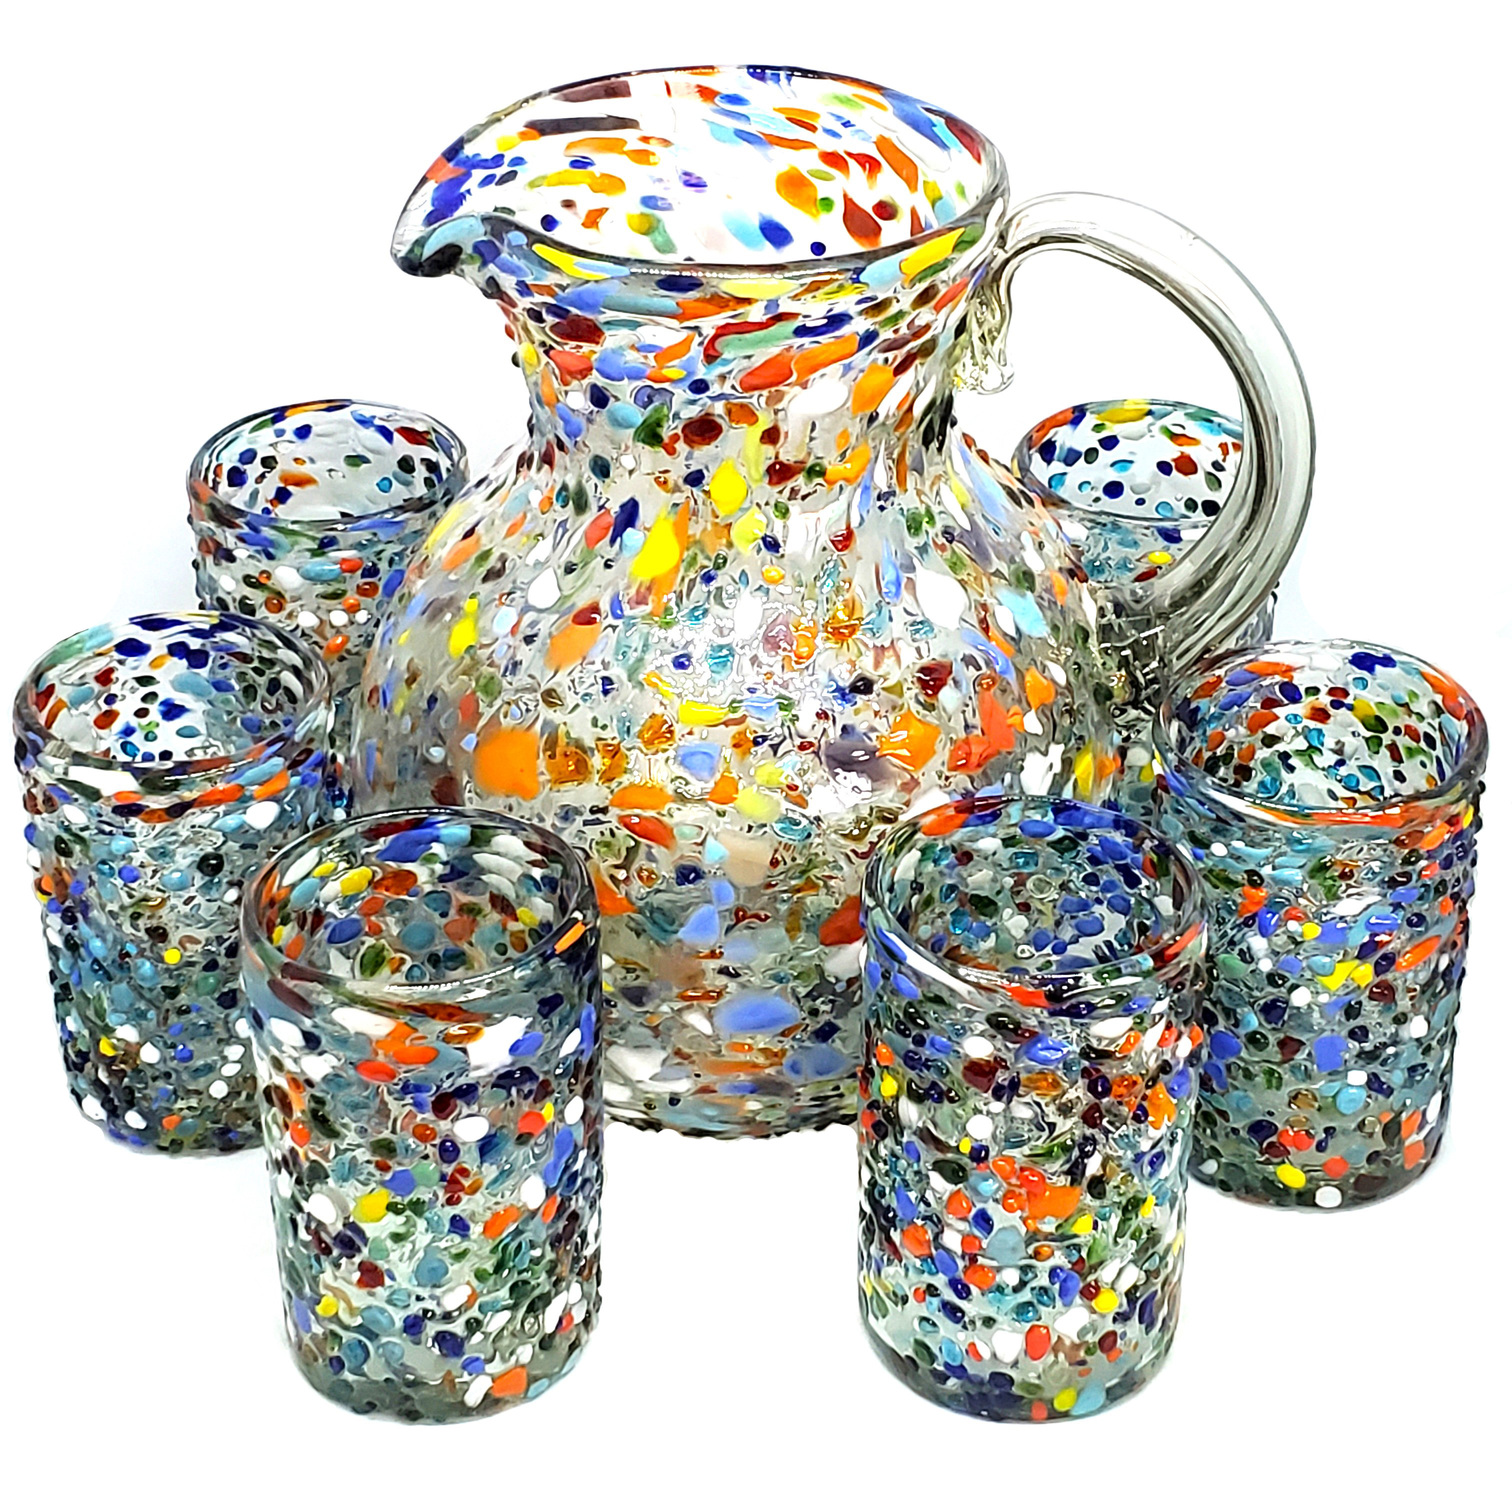 Novedades / Juego de jarra y 6 vasos grandes 'Confeti granizado' / Cada juego de jarra y vasos 'Confeti granizado' es una obra de arte por si mismo. Están decorados con cientos de pequeñas piedras de vidrio multicolor, haciendo cada juego único.